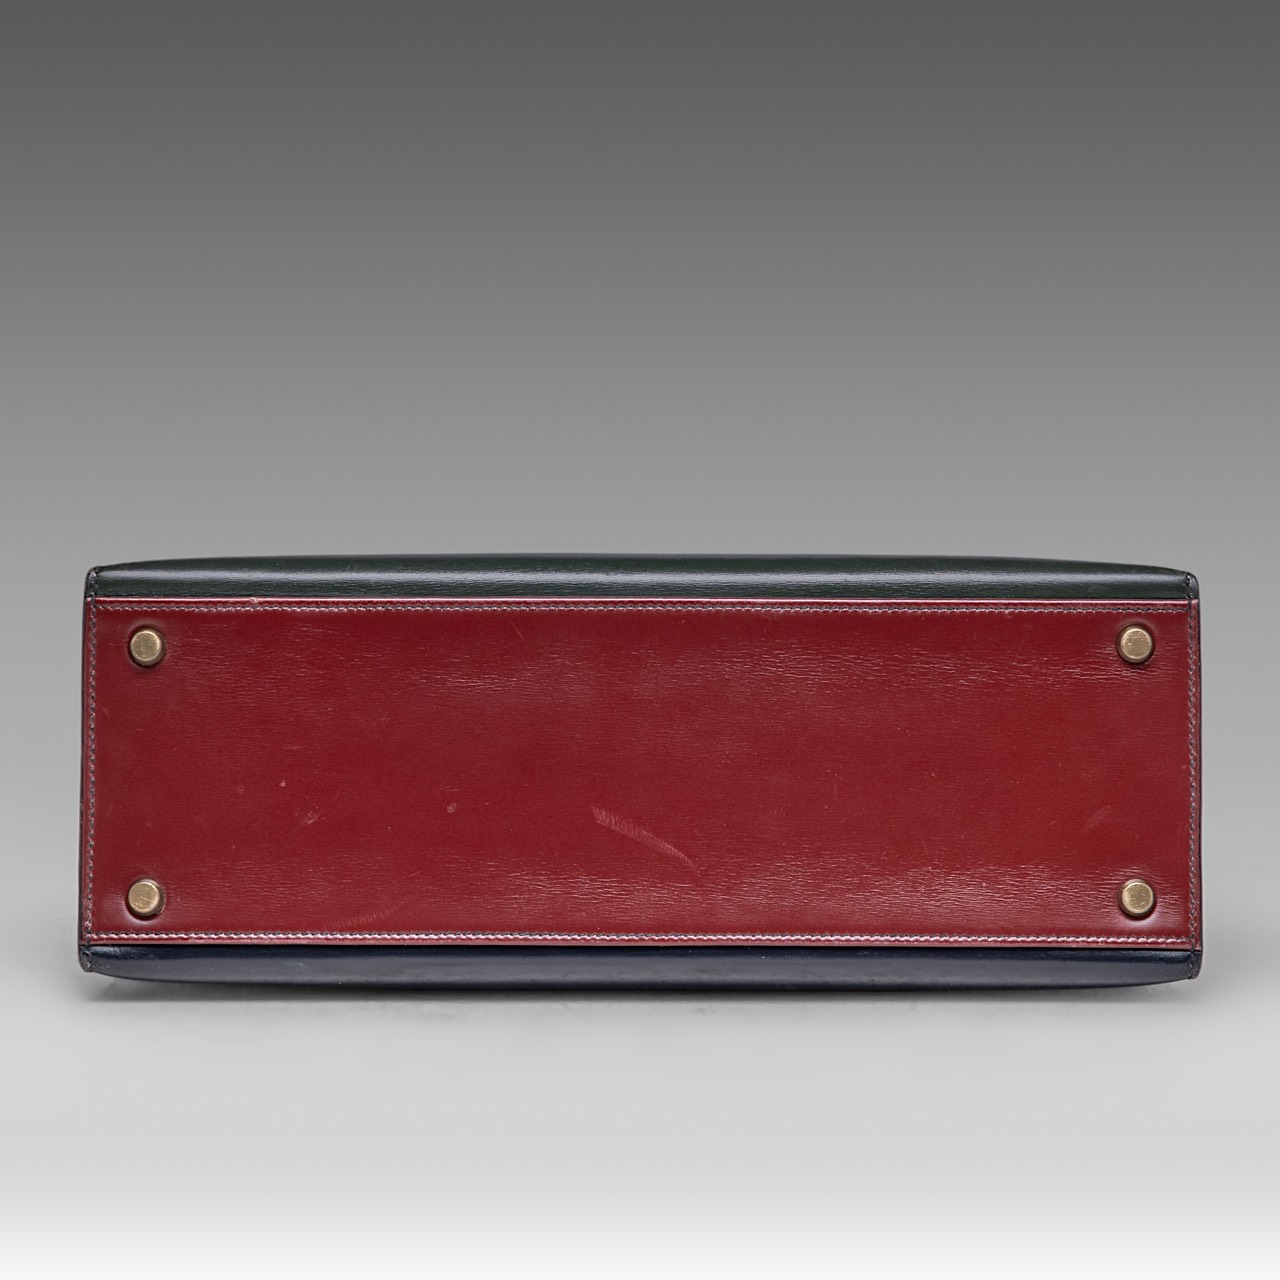 A vintage Hermes 'Kelly' 32 handbag, in rouge vif/vert fonce/bleu indigo box calfskin, with gilt met - Image 7 of 7